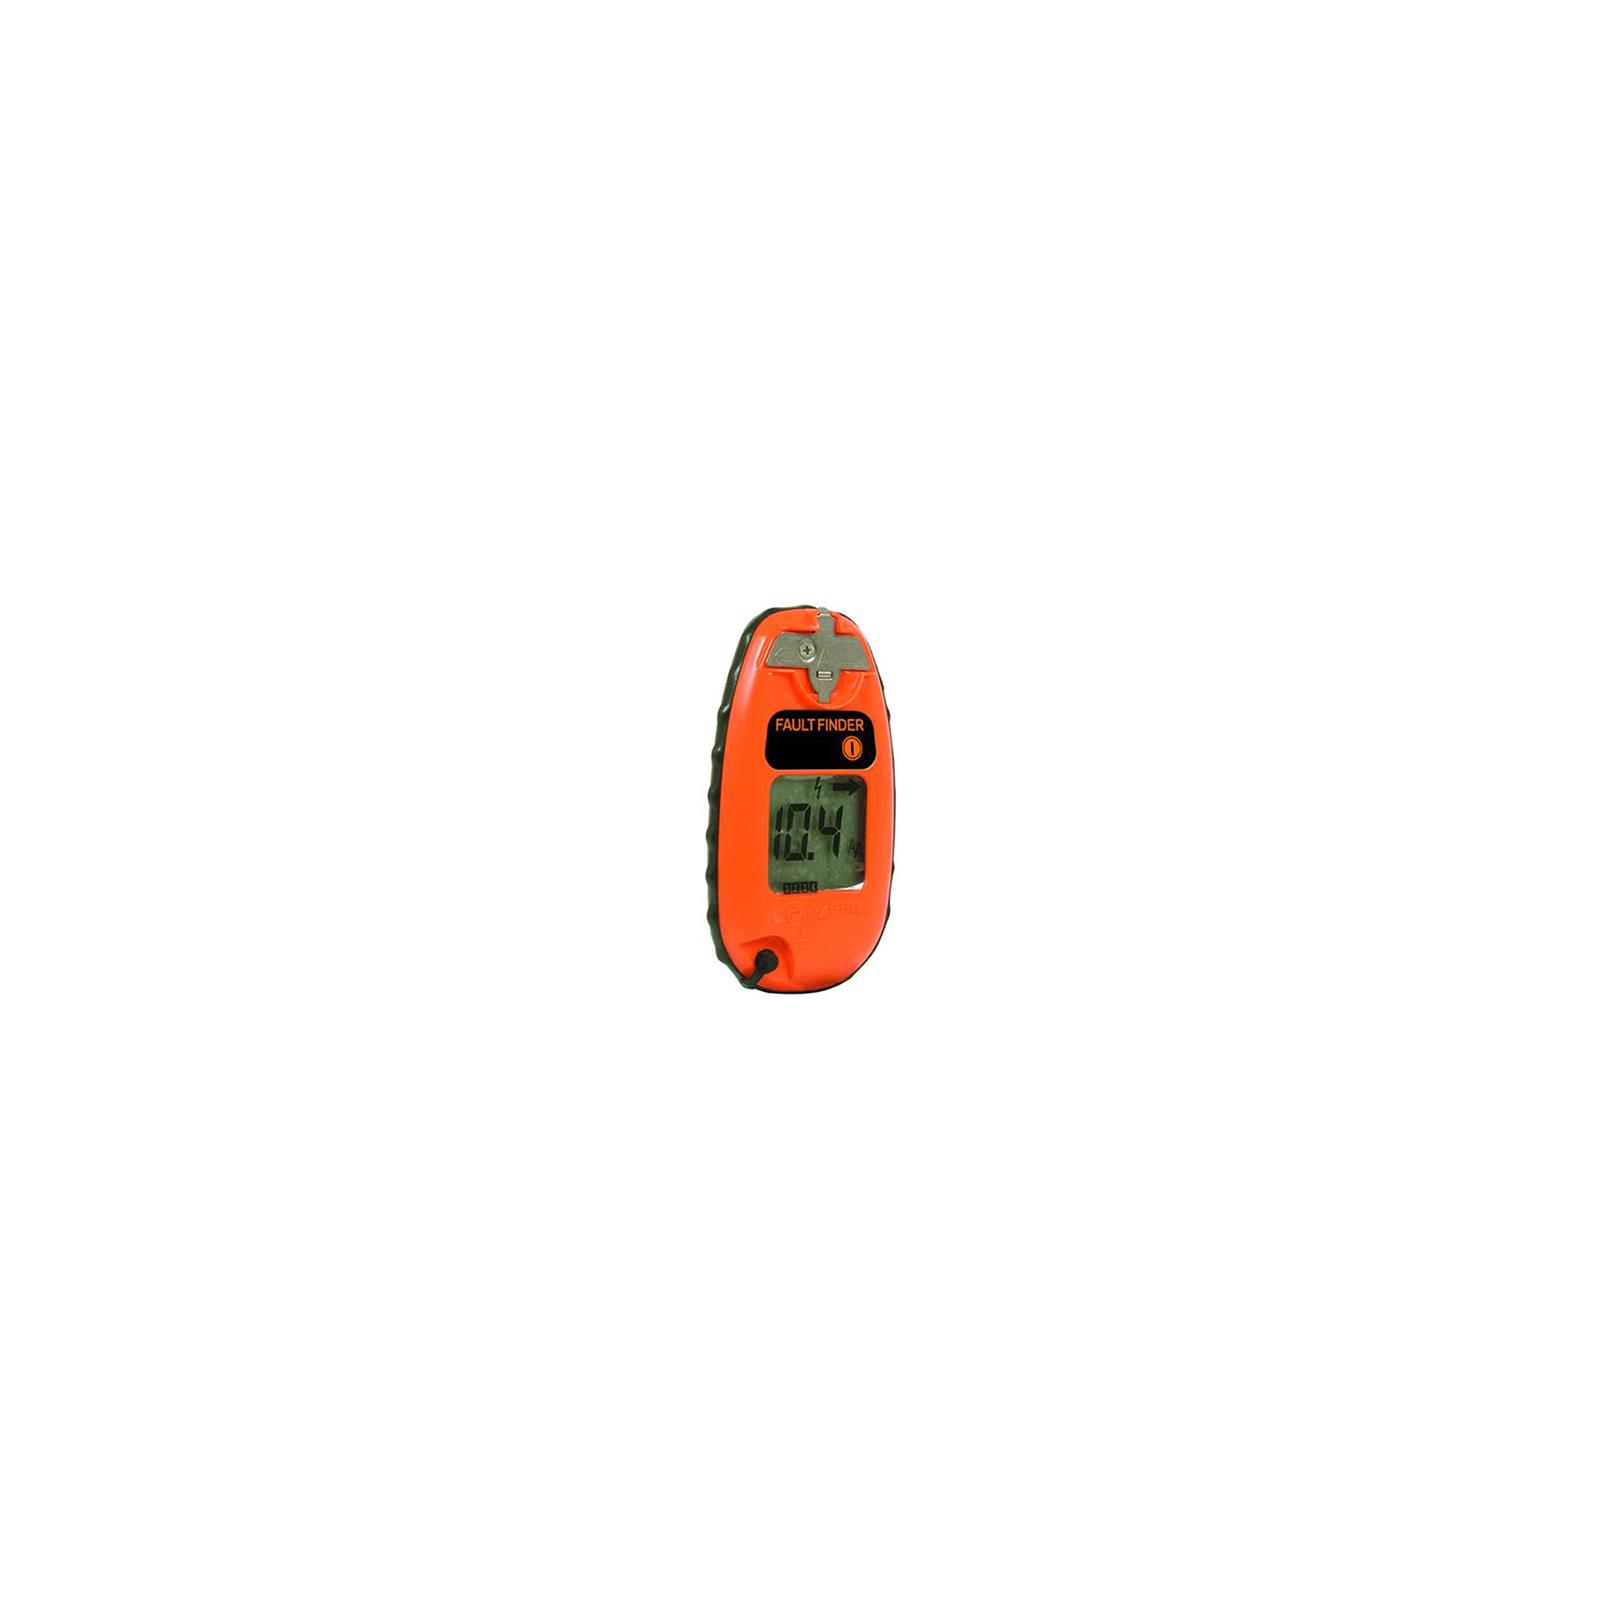 Gallagher 1.5 volt Battery Fence Volt/Current Meter and Fault Finder Orange - image 1 of 6